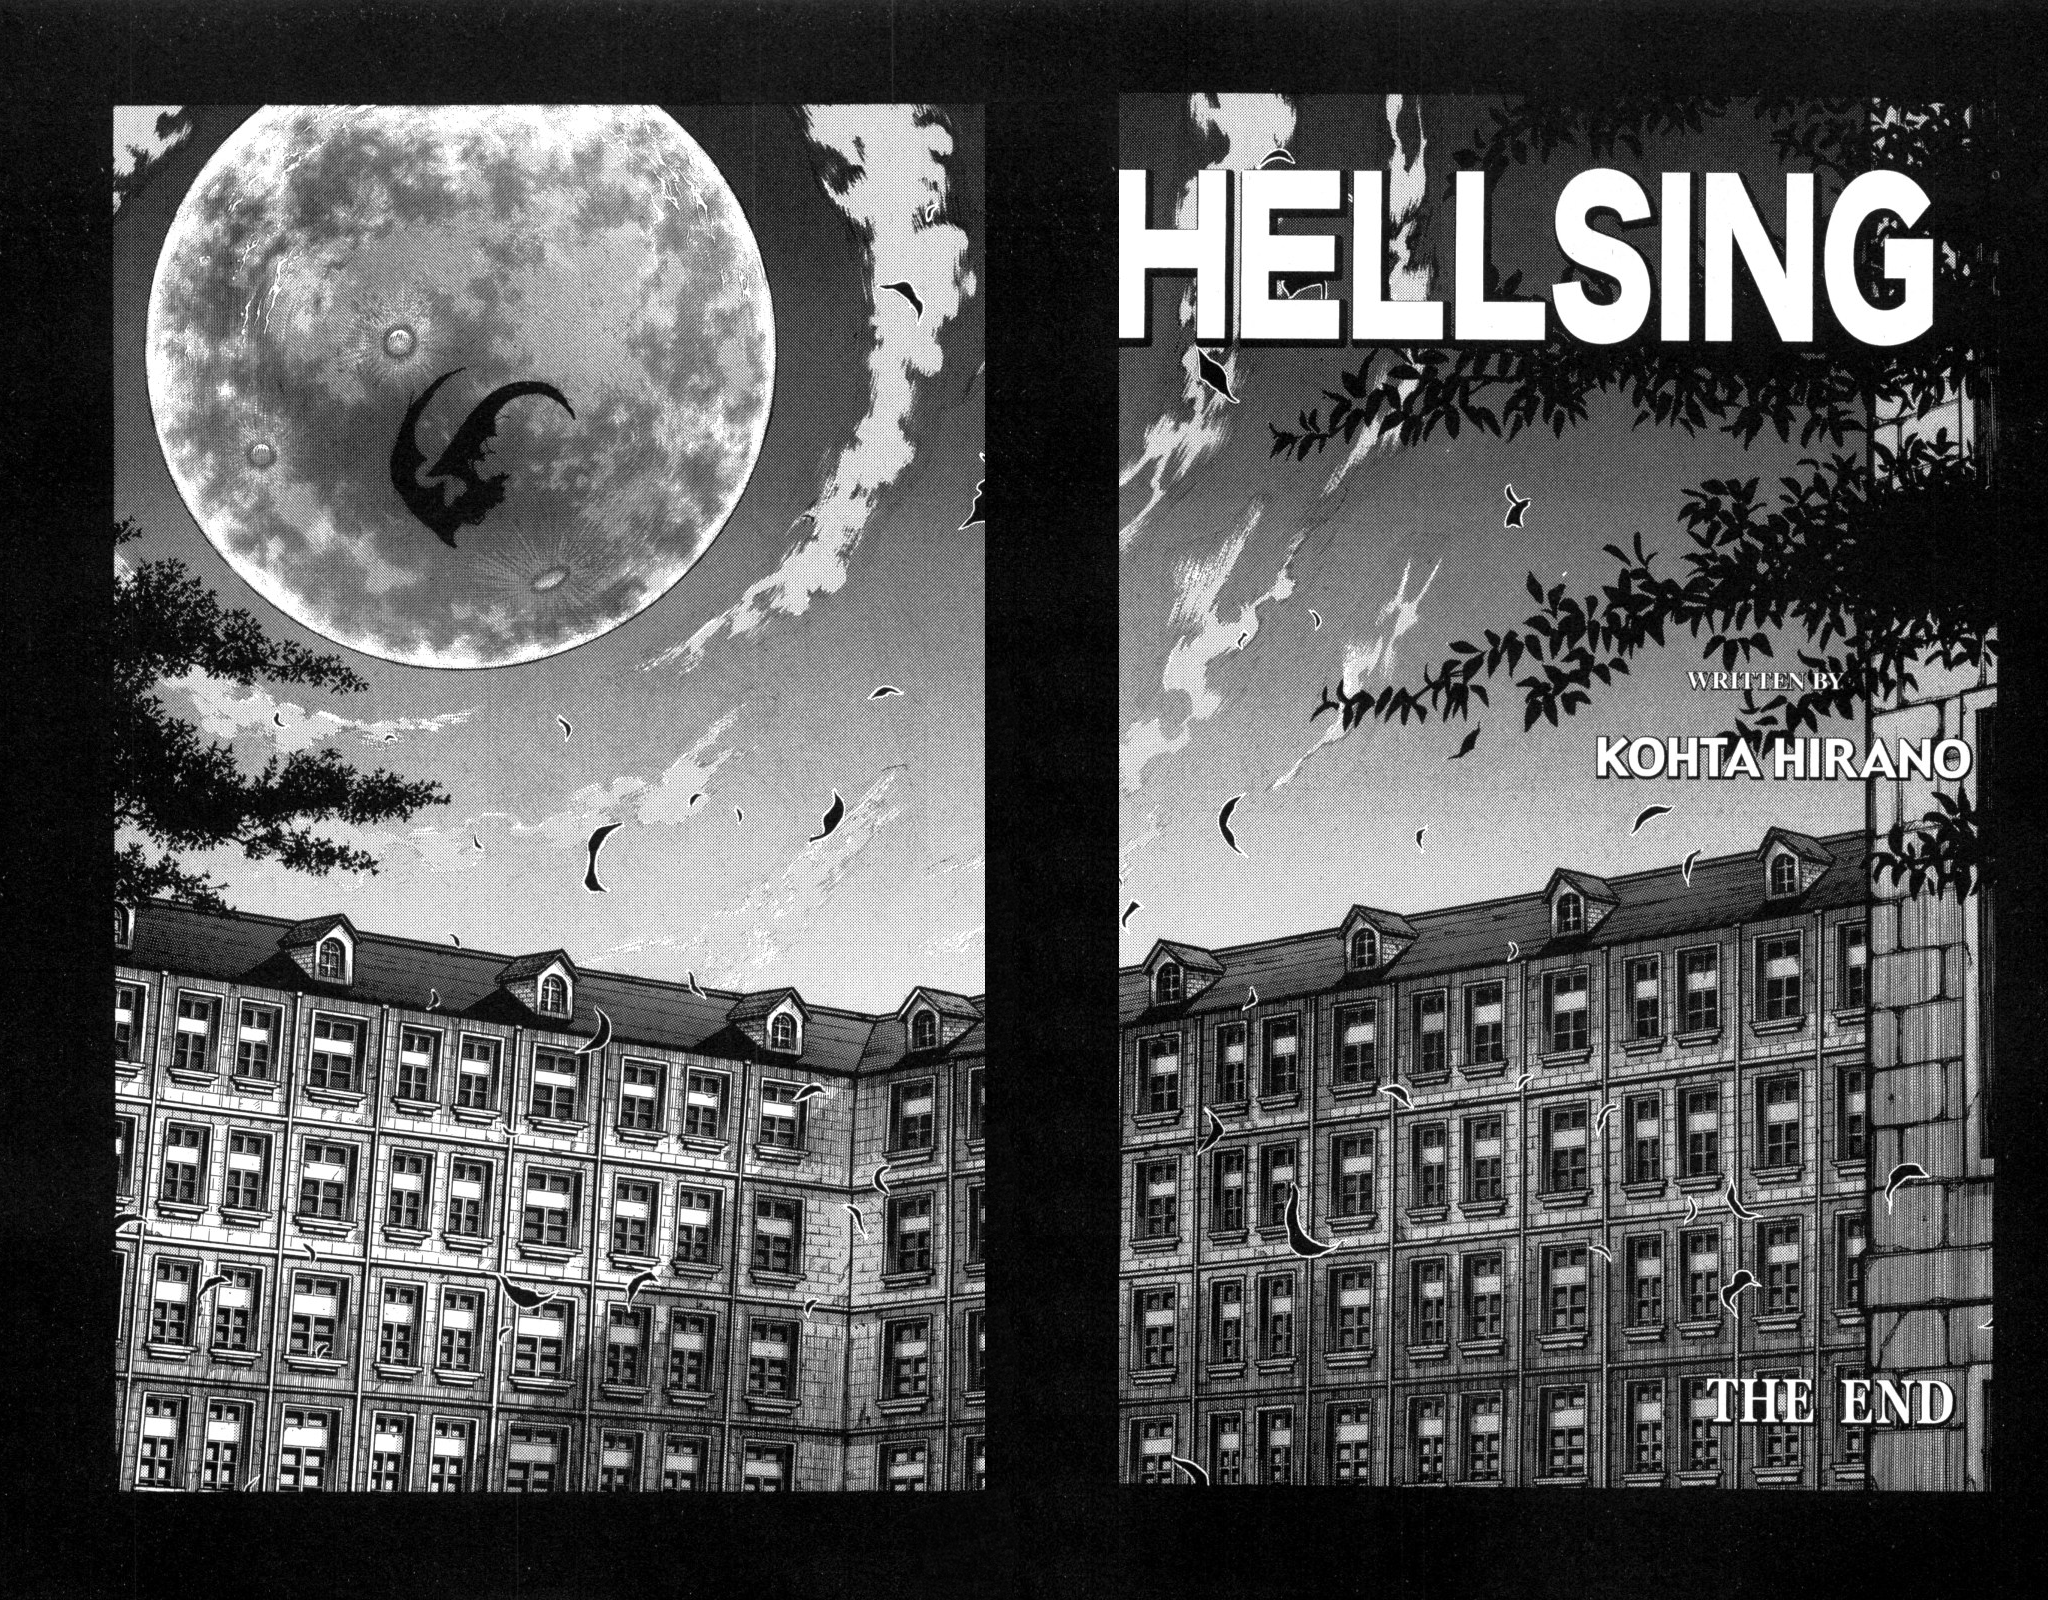 Coleção: Hellsing (Nova Edição: Vol. 01 ao 10)